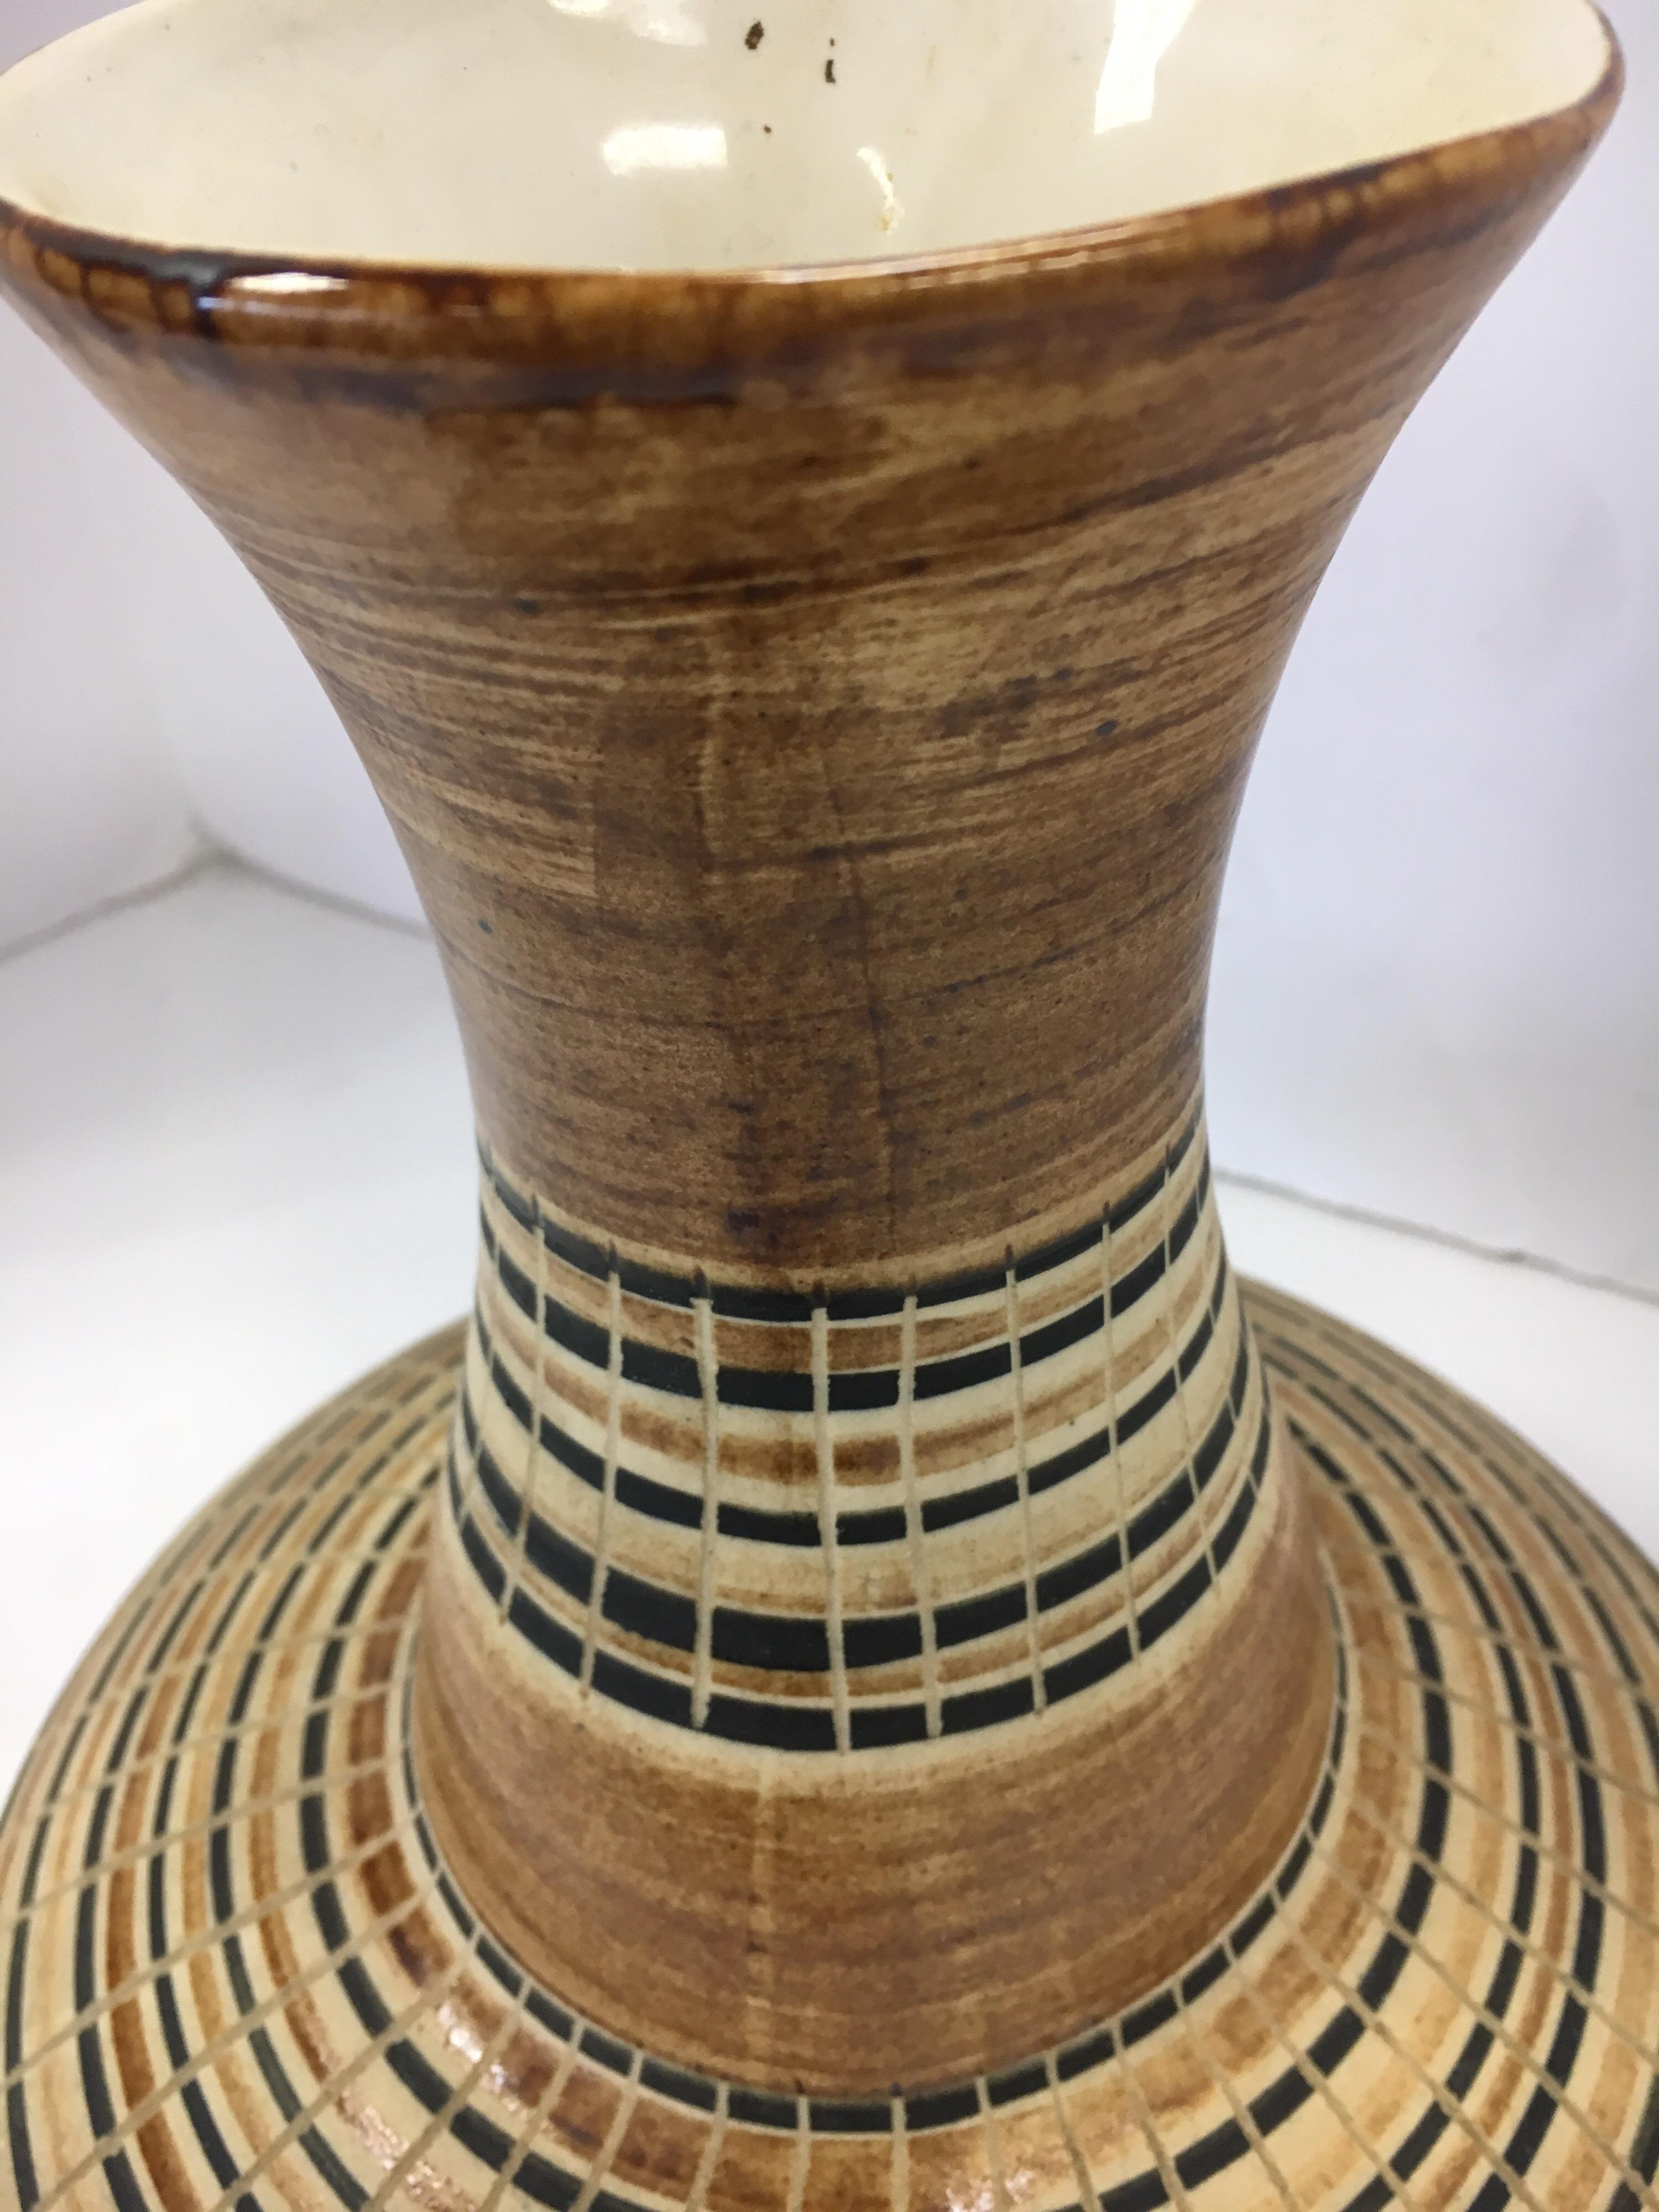 Israeli Harsa Studio Israel Mid-Century Modern Ceramic Vase Urn